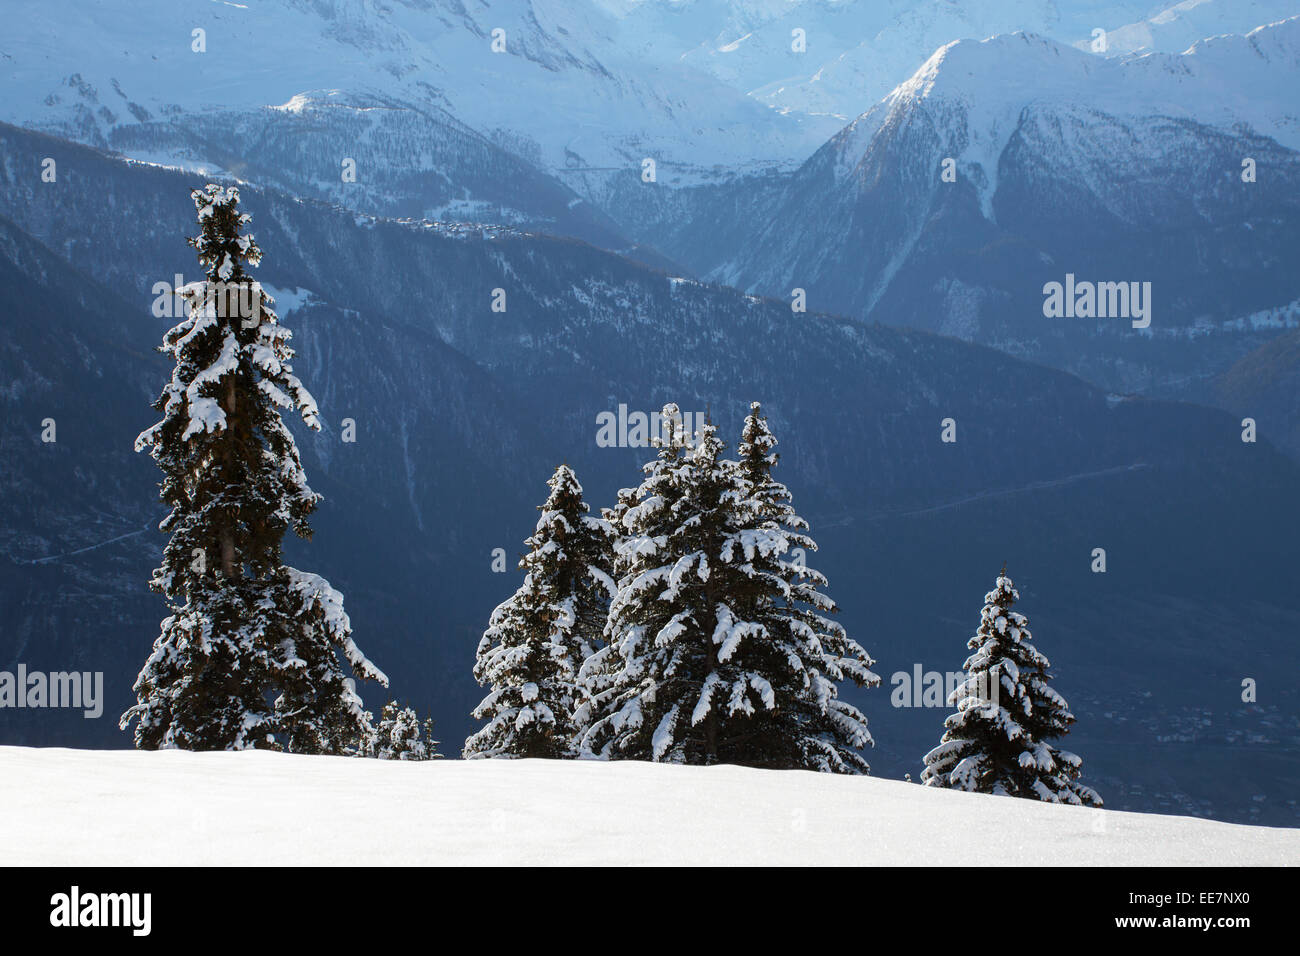 Berge von Riederalp und Schnee gesehen bedeckt Fichten im Winter in den Schweizer Alpen, Wallis / Valais, Schweiz Stockfoto